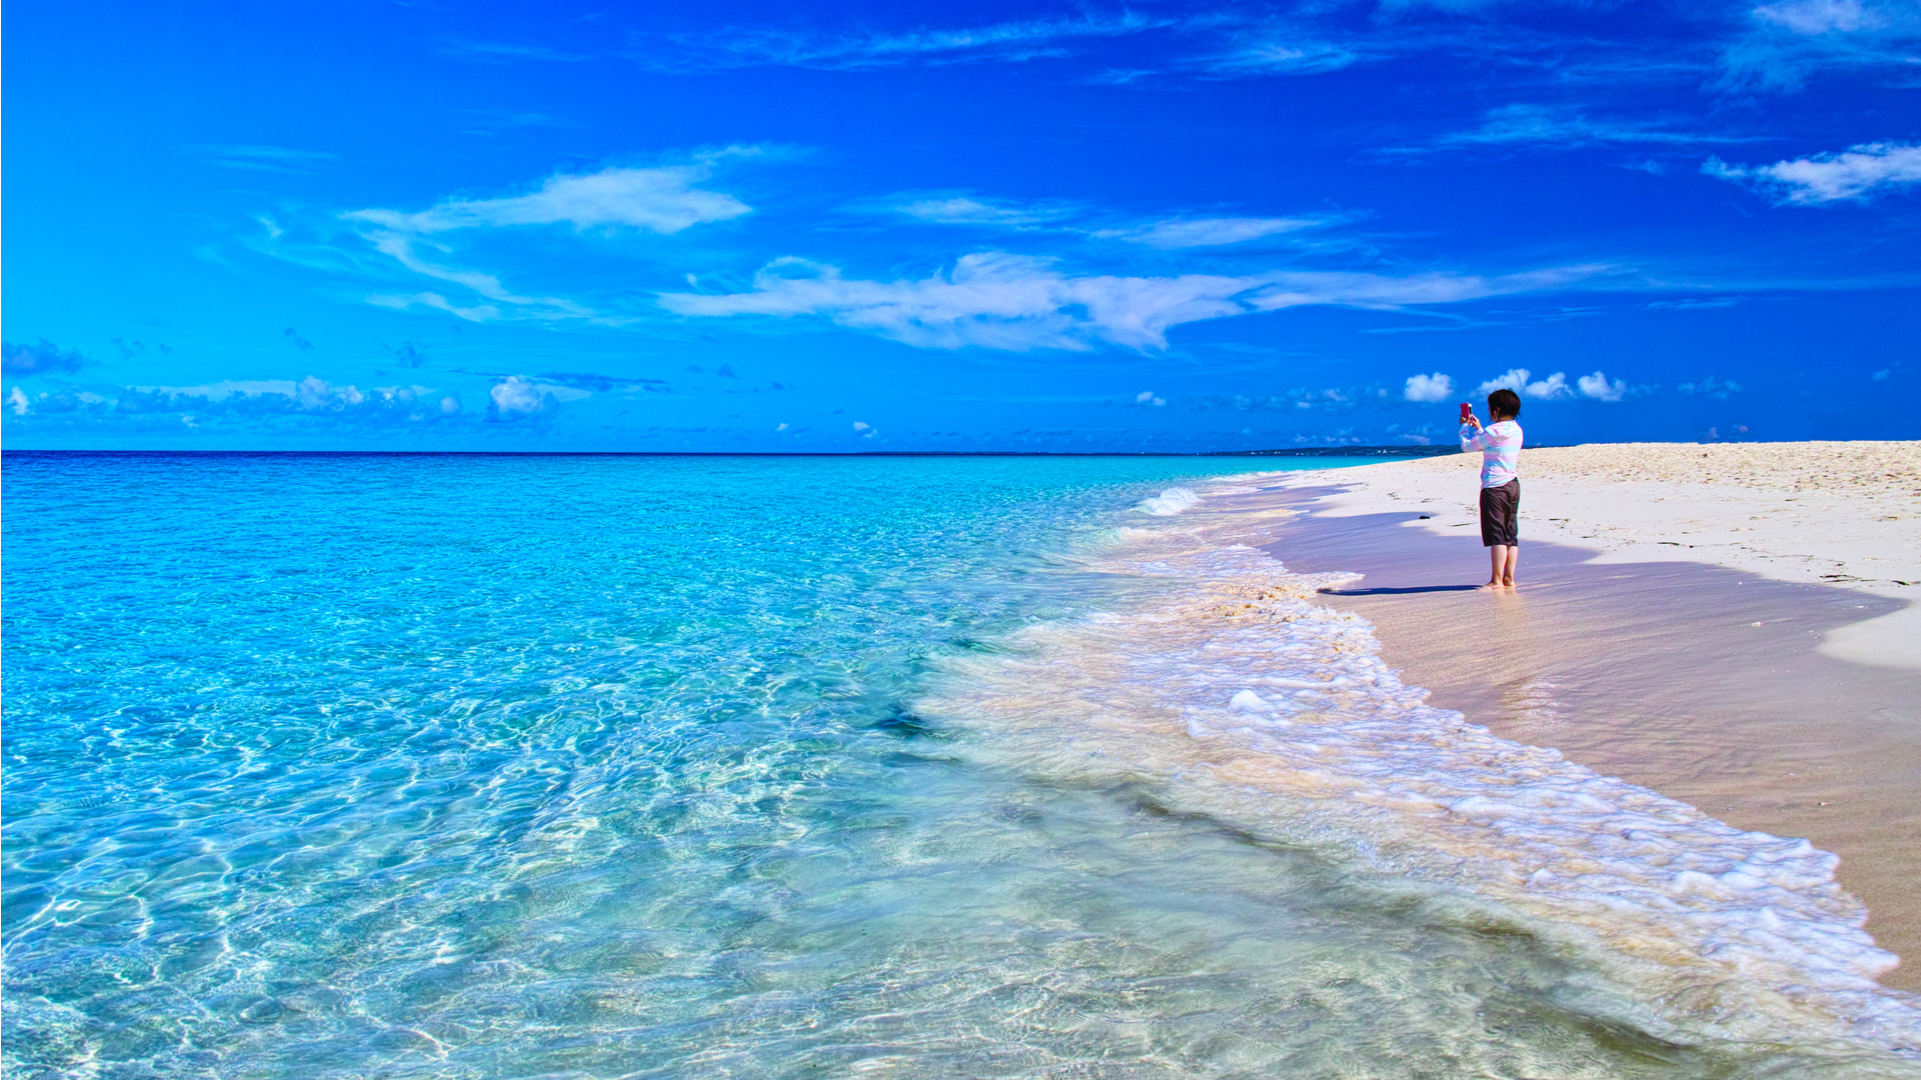 奇跡のビーチはここ 夏に行きたい国内絶景ビーチランキングtop10 Trip Editor